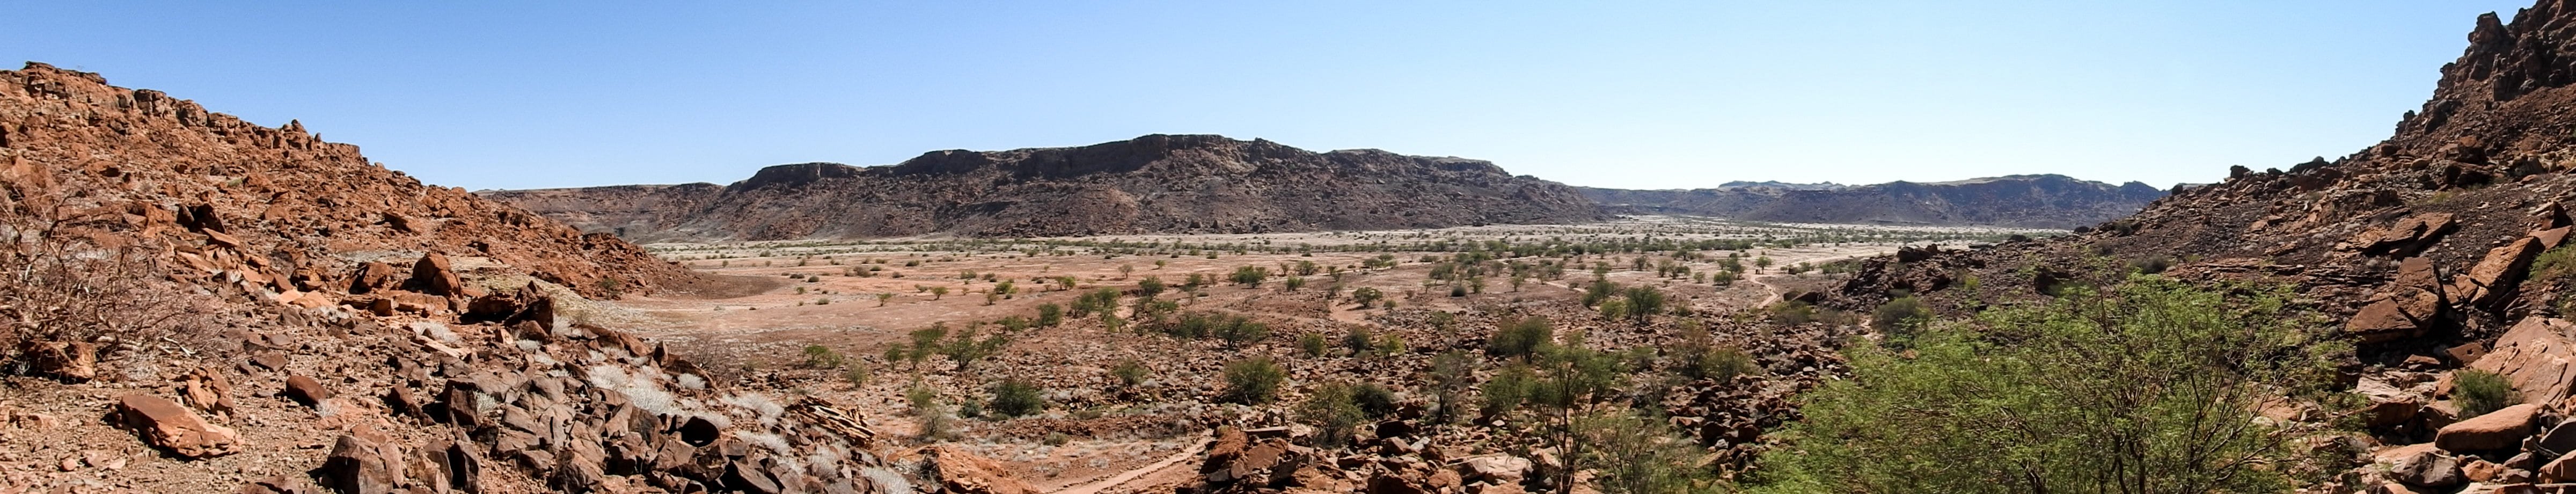 Namibia-Twyfelfontein